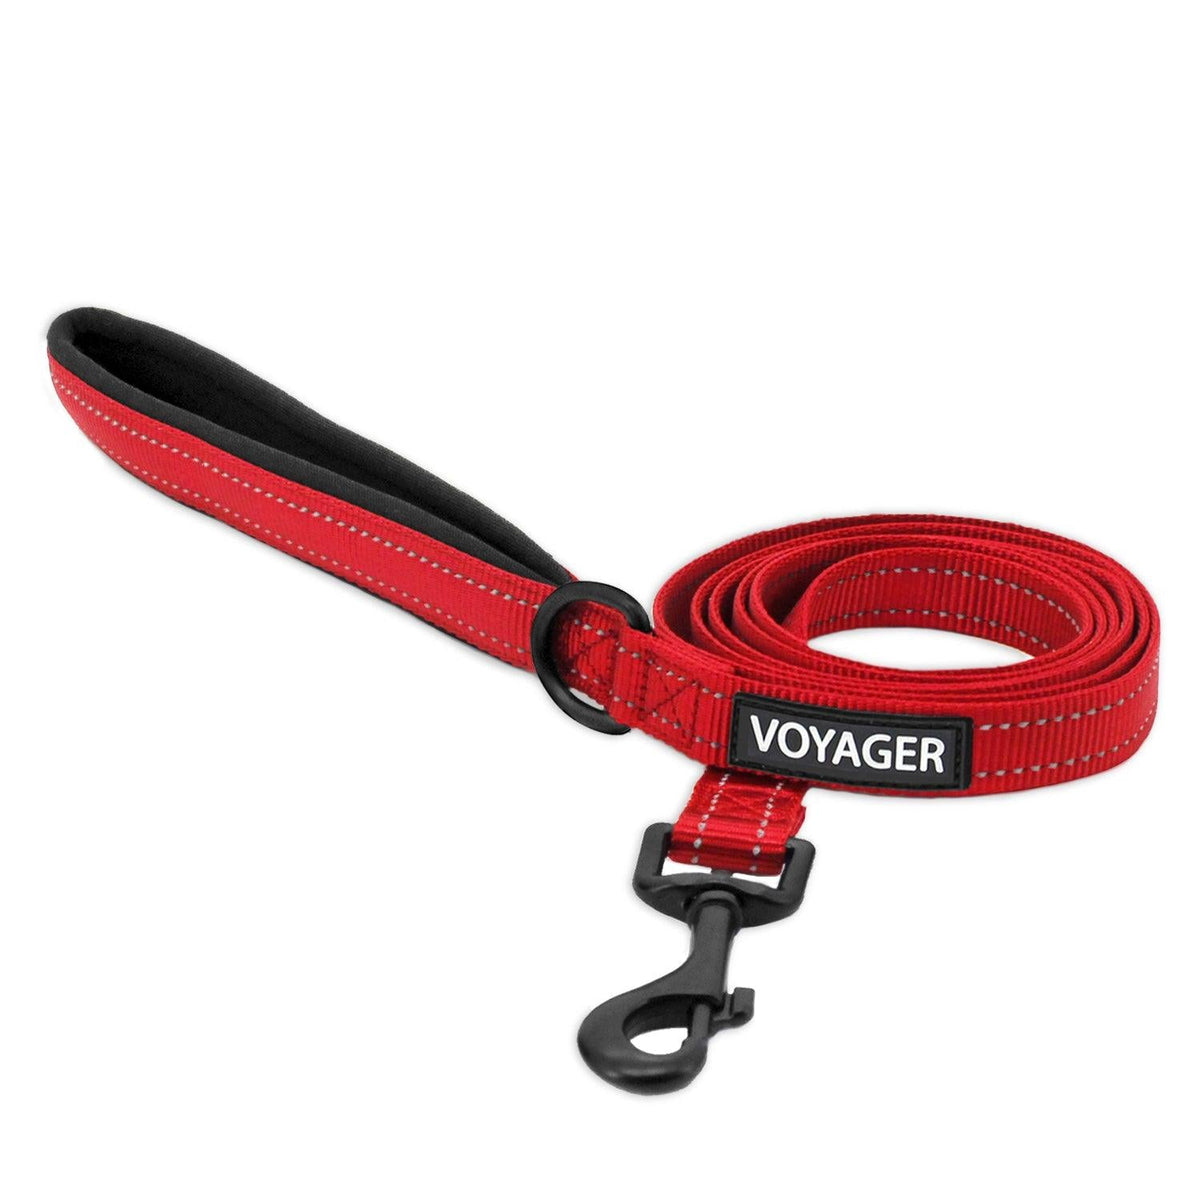 Voyager Reflective Dog Leash - VOYAGER Dog Harnesses